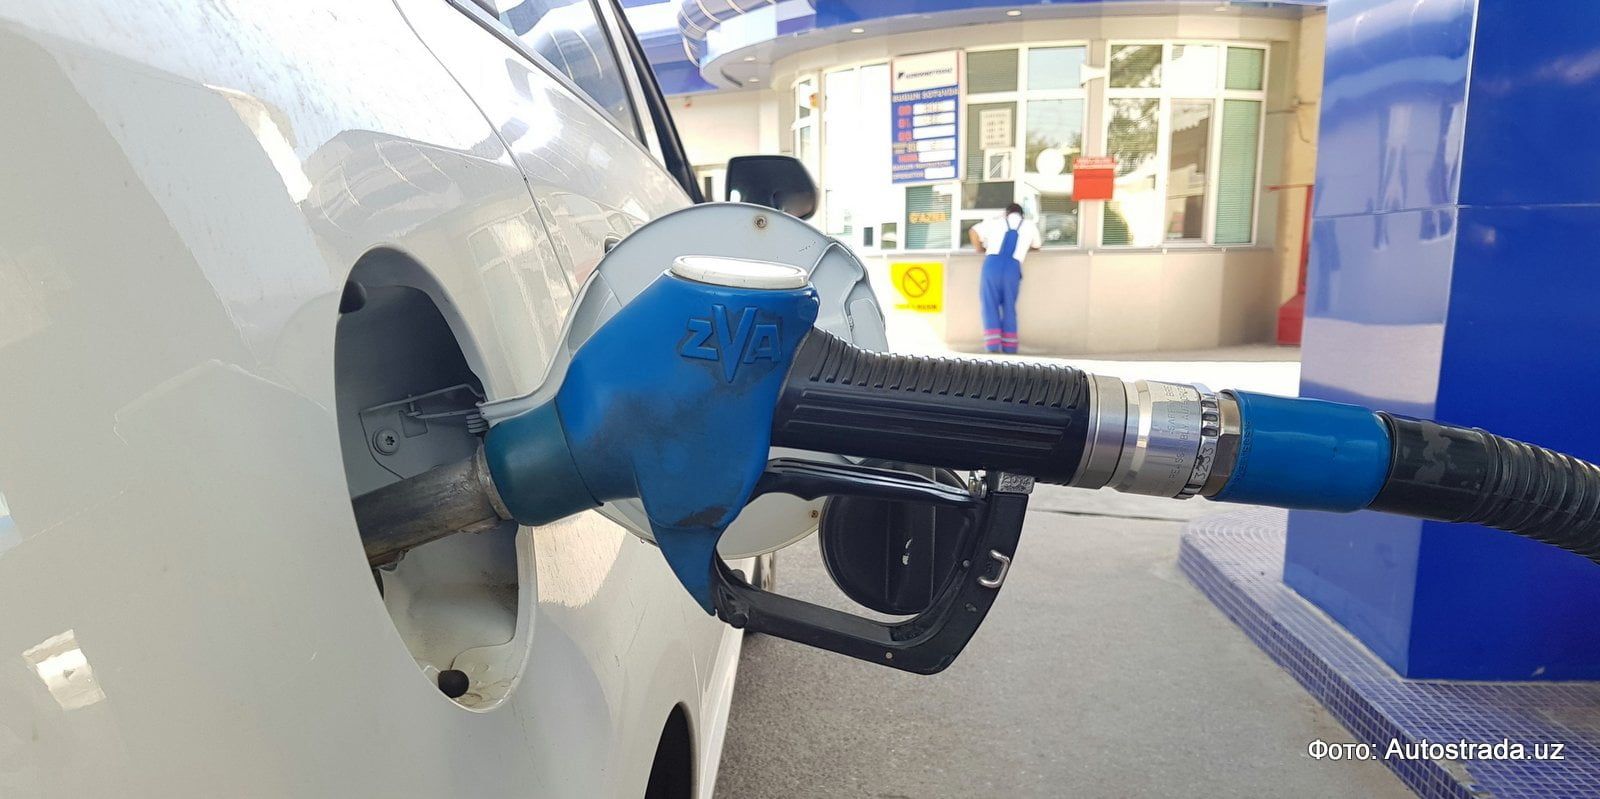 Автомобиль заправляется бензином на заправке Узбекнефтегаз в Ташкенте после роста цен на бензин в Узбекистане